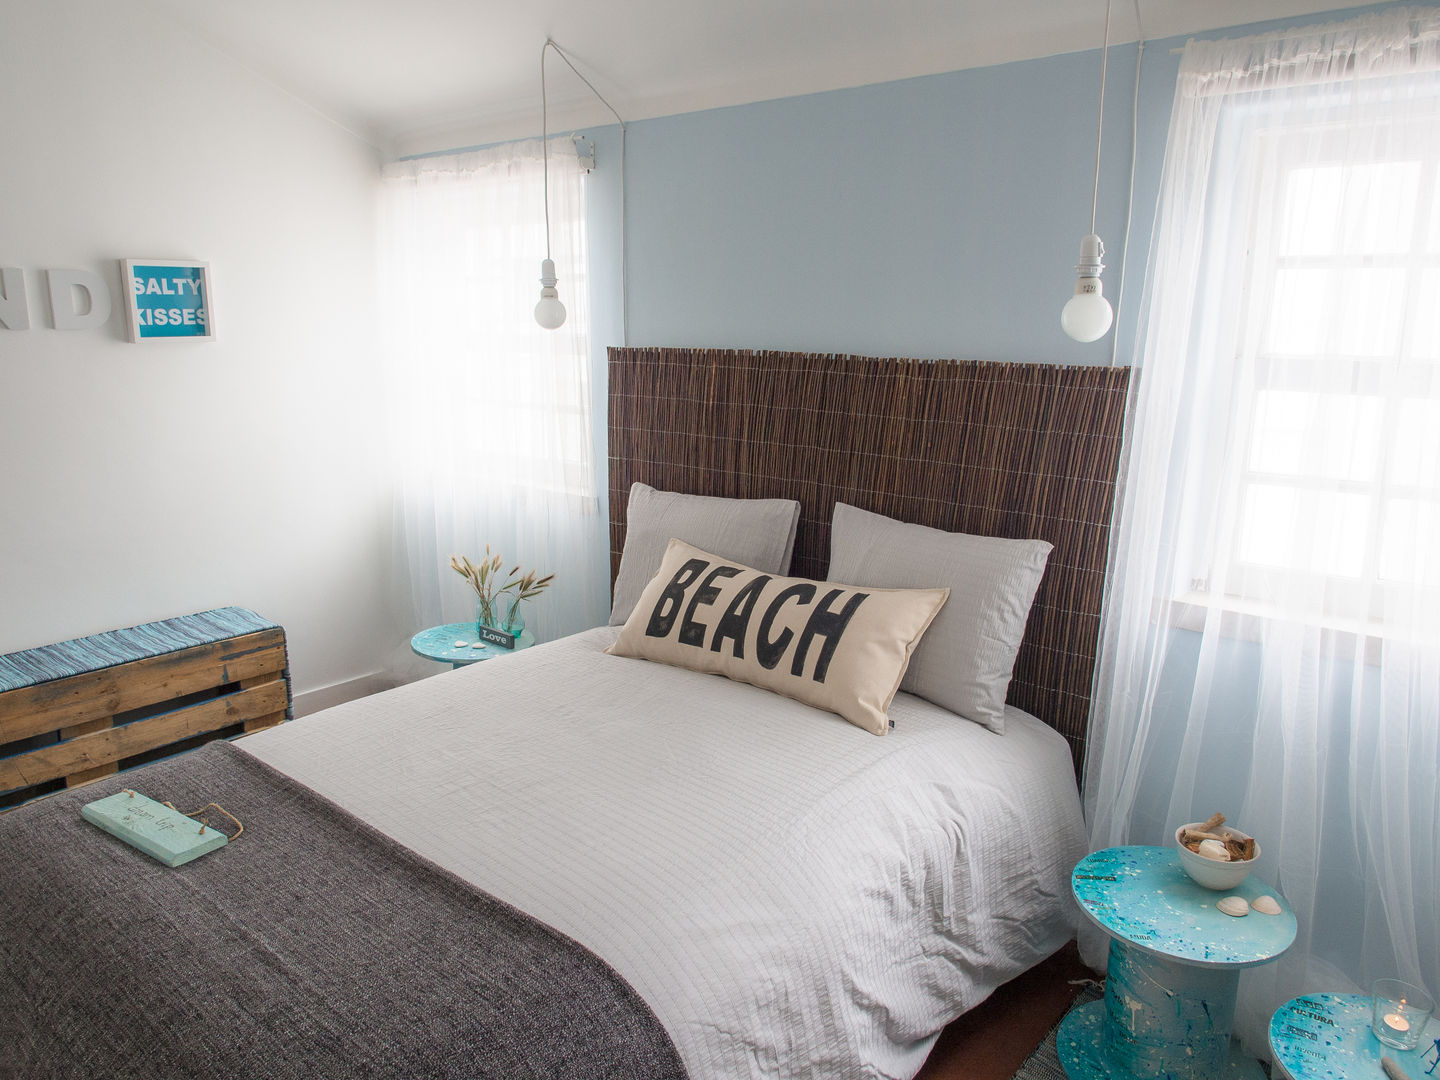 NiceWay Cascais Hostel - Beach Bedroom - Cascais, MUDA Home Design MUDA Home Design Commercial spaces Hotels